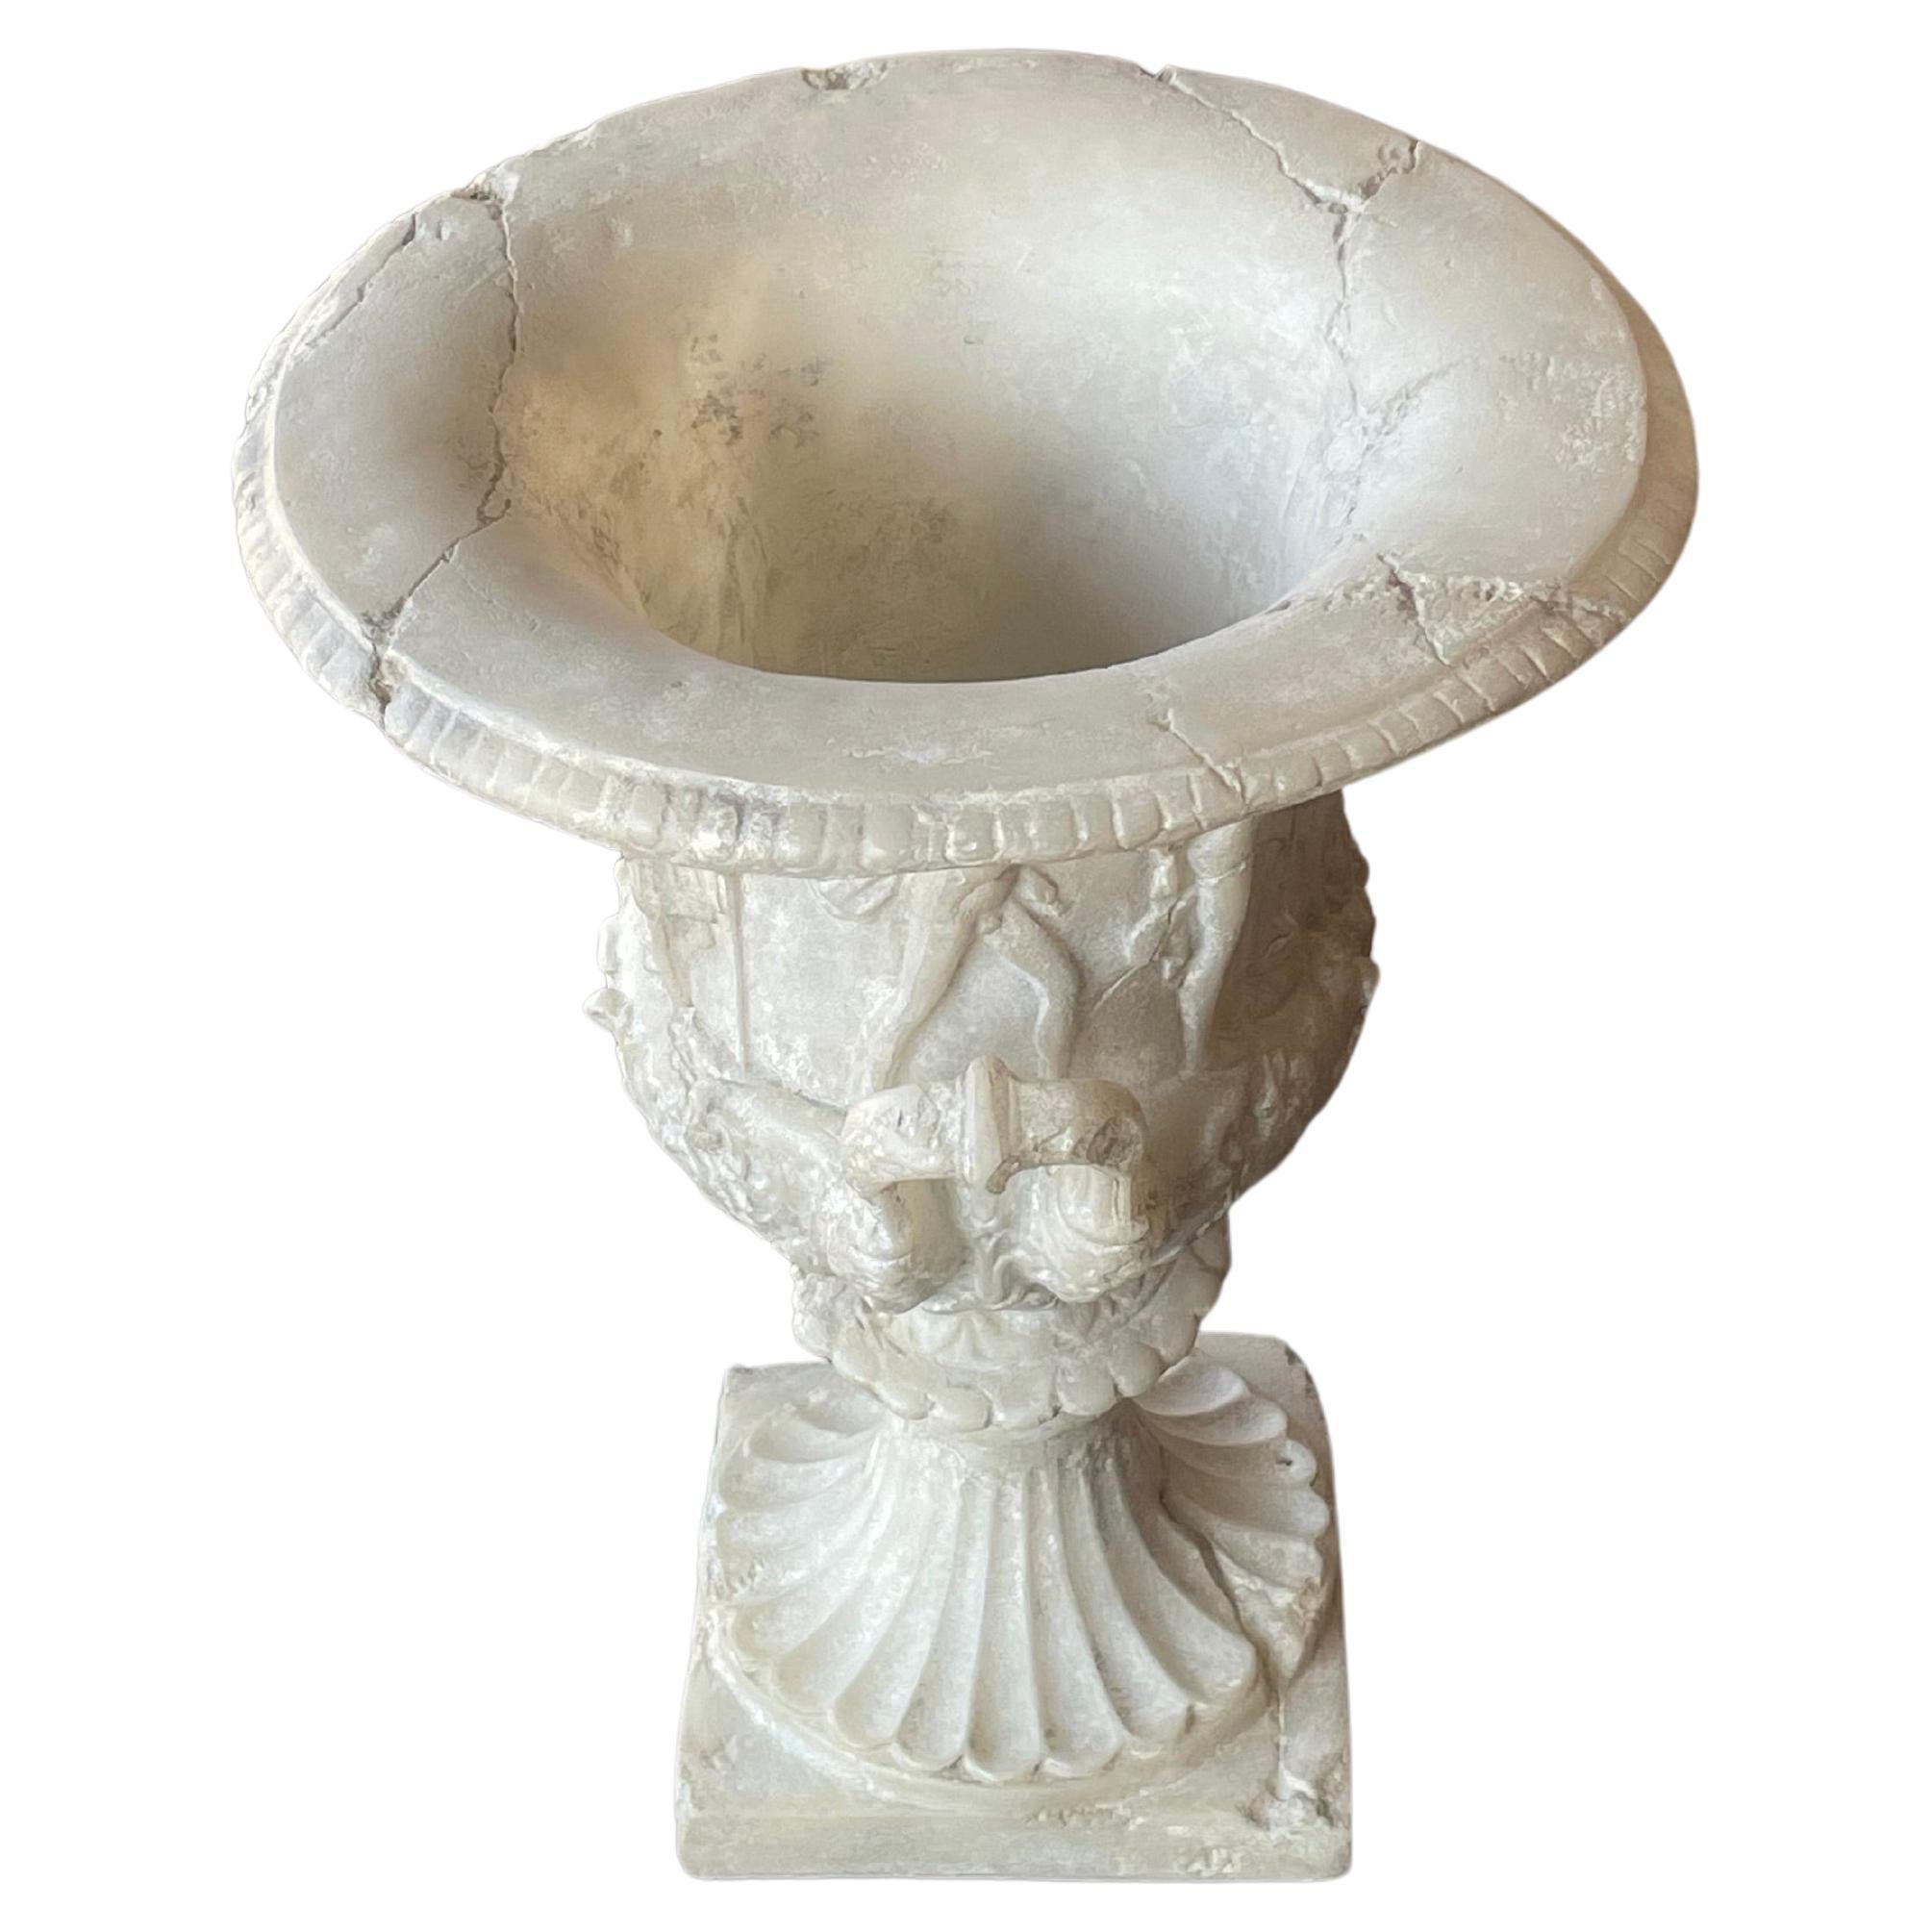 Source : Paris, Martyn Lawrence Bullard
Vase français en forme de Campagne en albâtre blanc, 19e siècle
